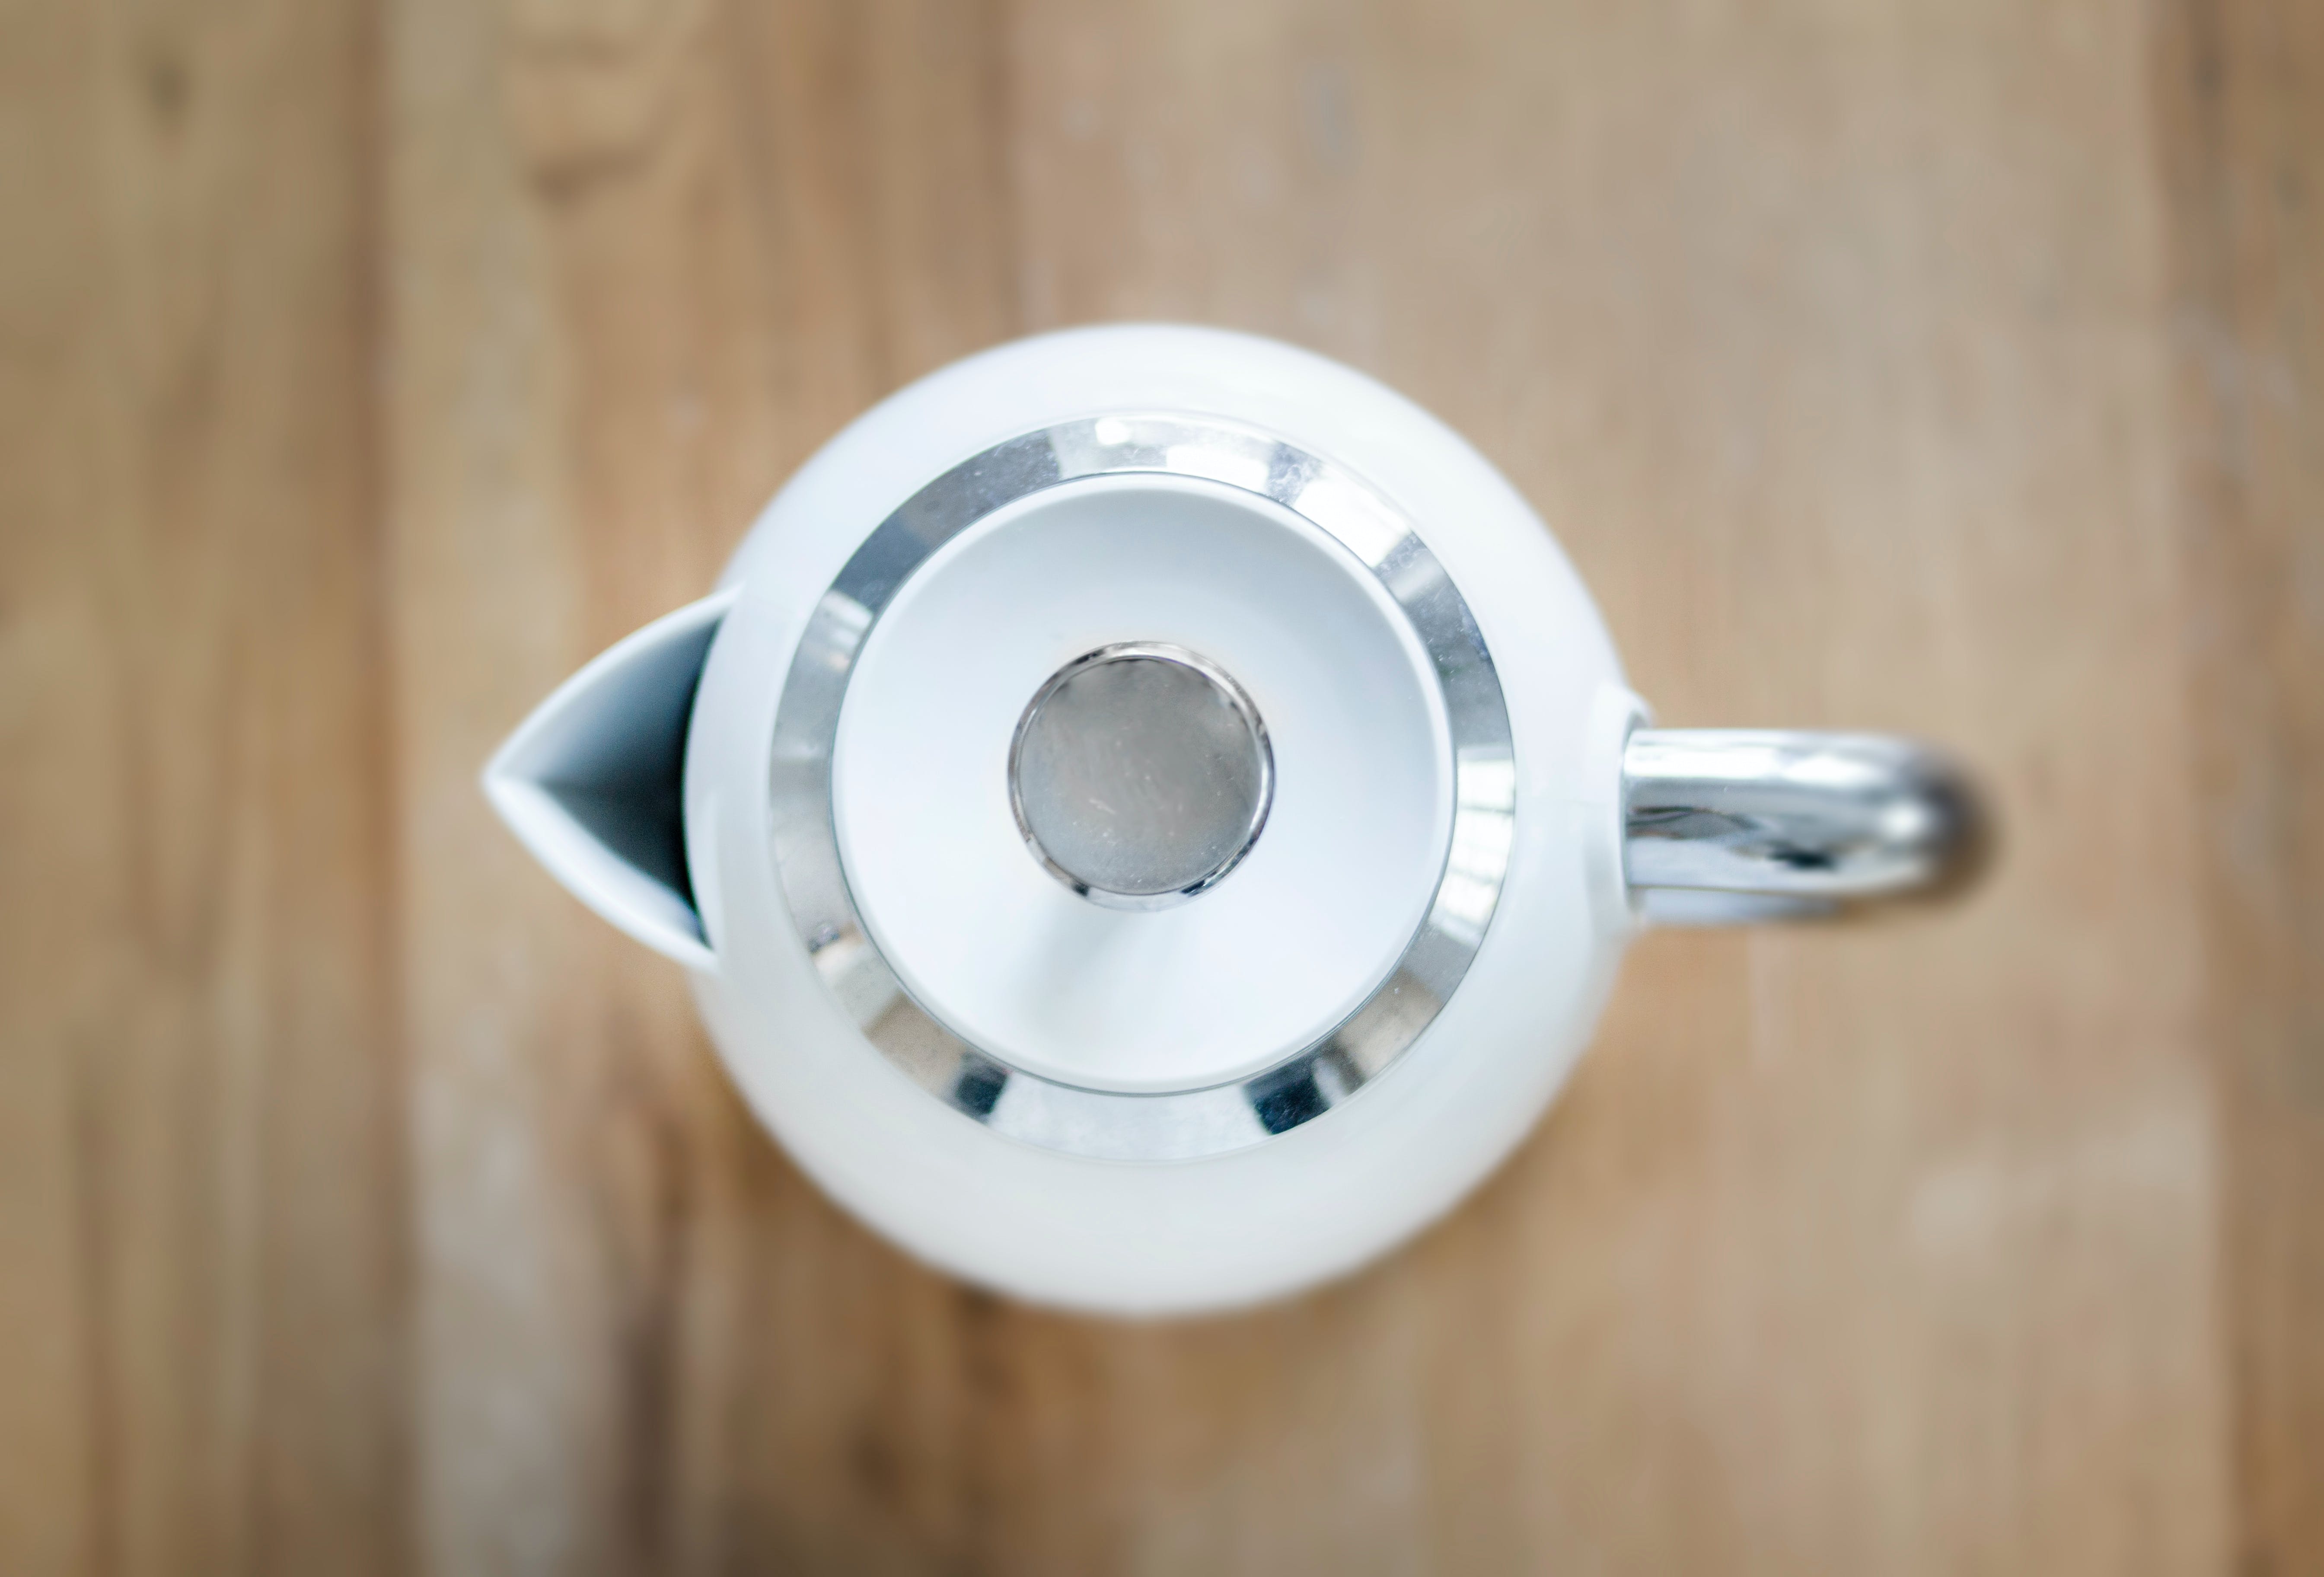 Как очистить чайник от накипи: простые и эффективные способы удалить налет